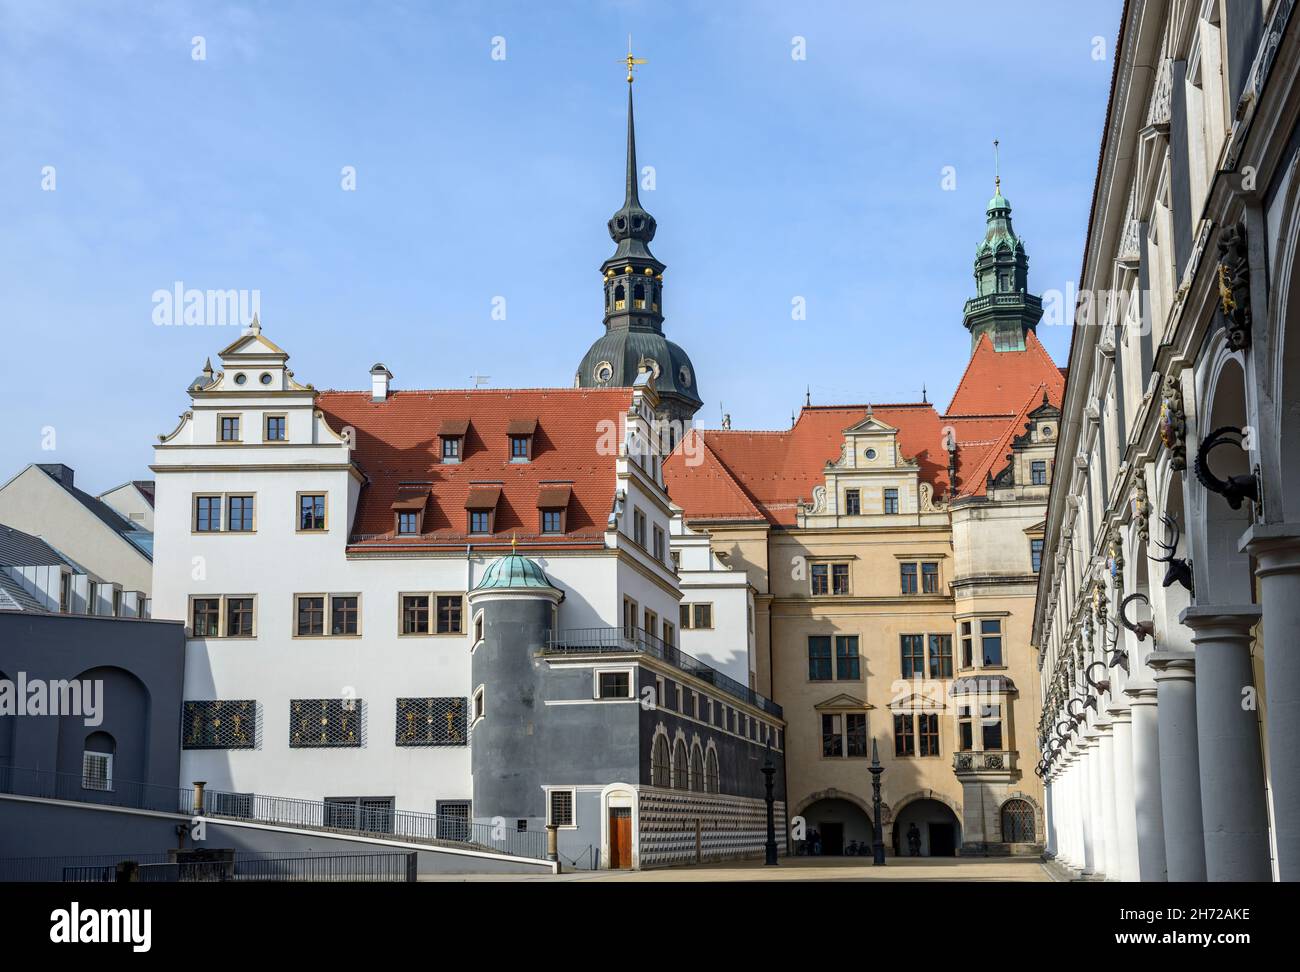 Anzeigen von Ställen Innenhof (stallhof) in Richtung Kanzleramt, George Tor und Turm von Schloss Hausmannsturm Dresden, Sachsen, Deutschland. Stockfoto